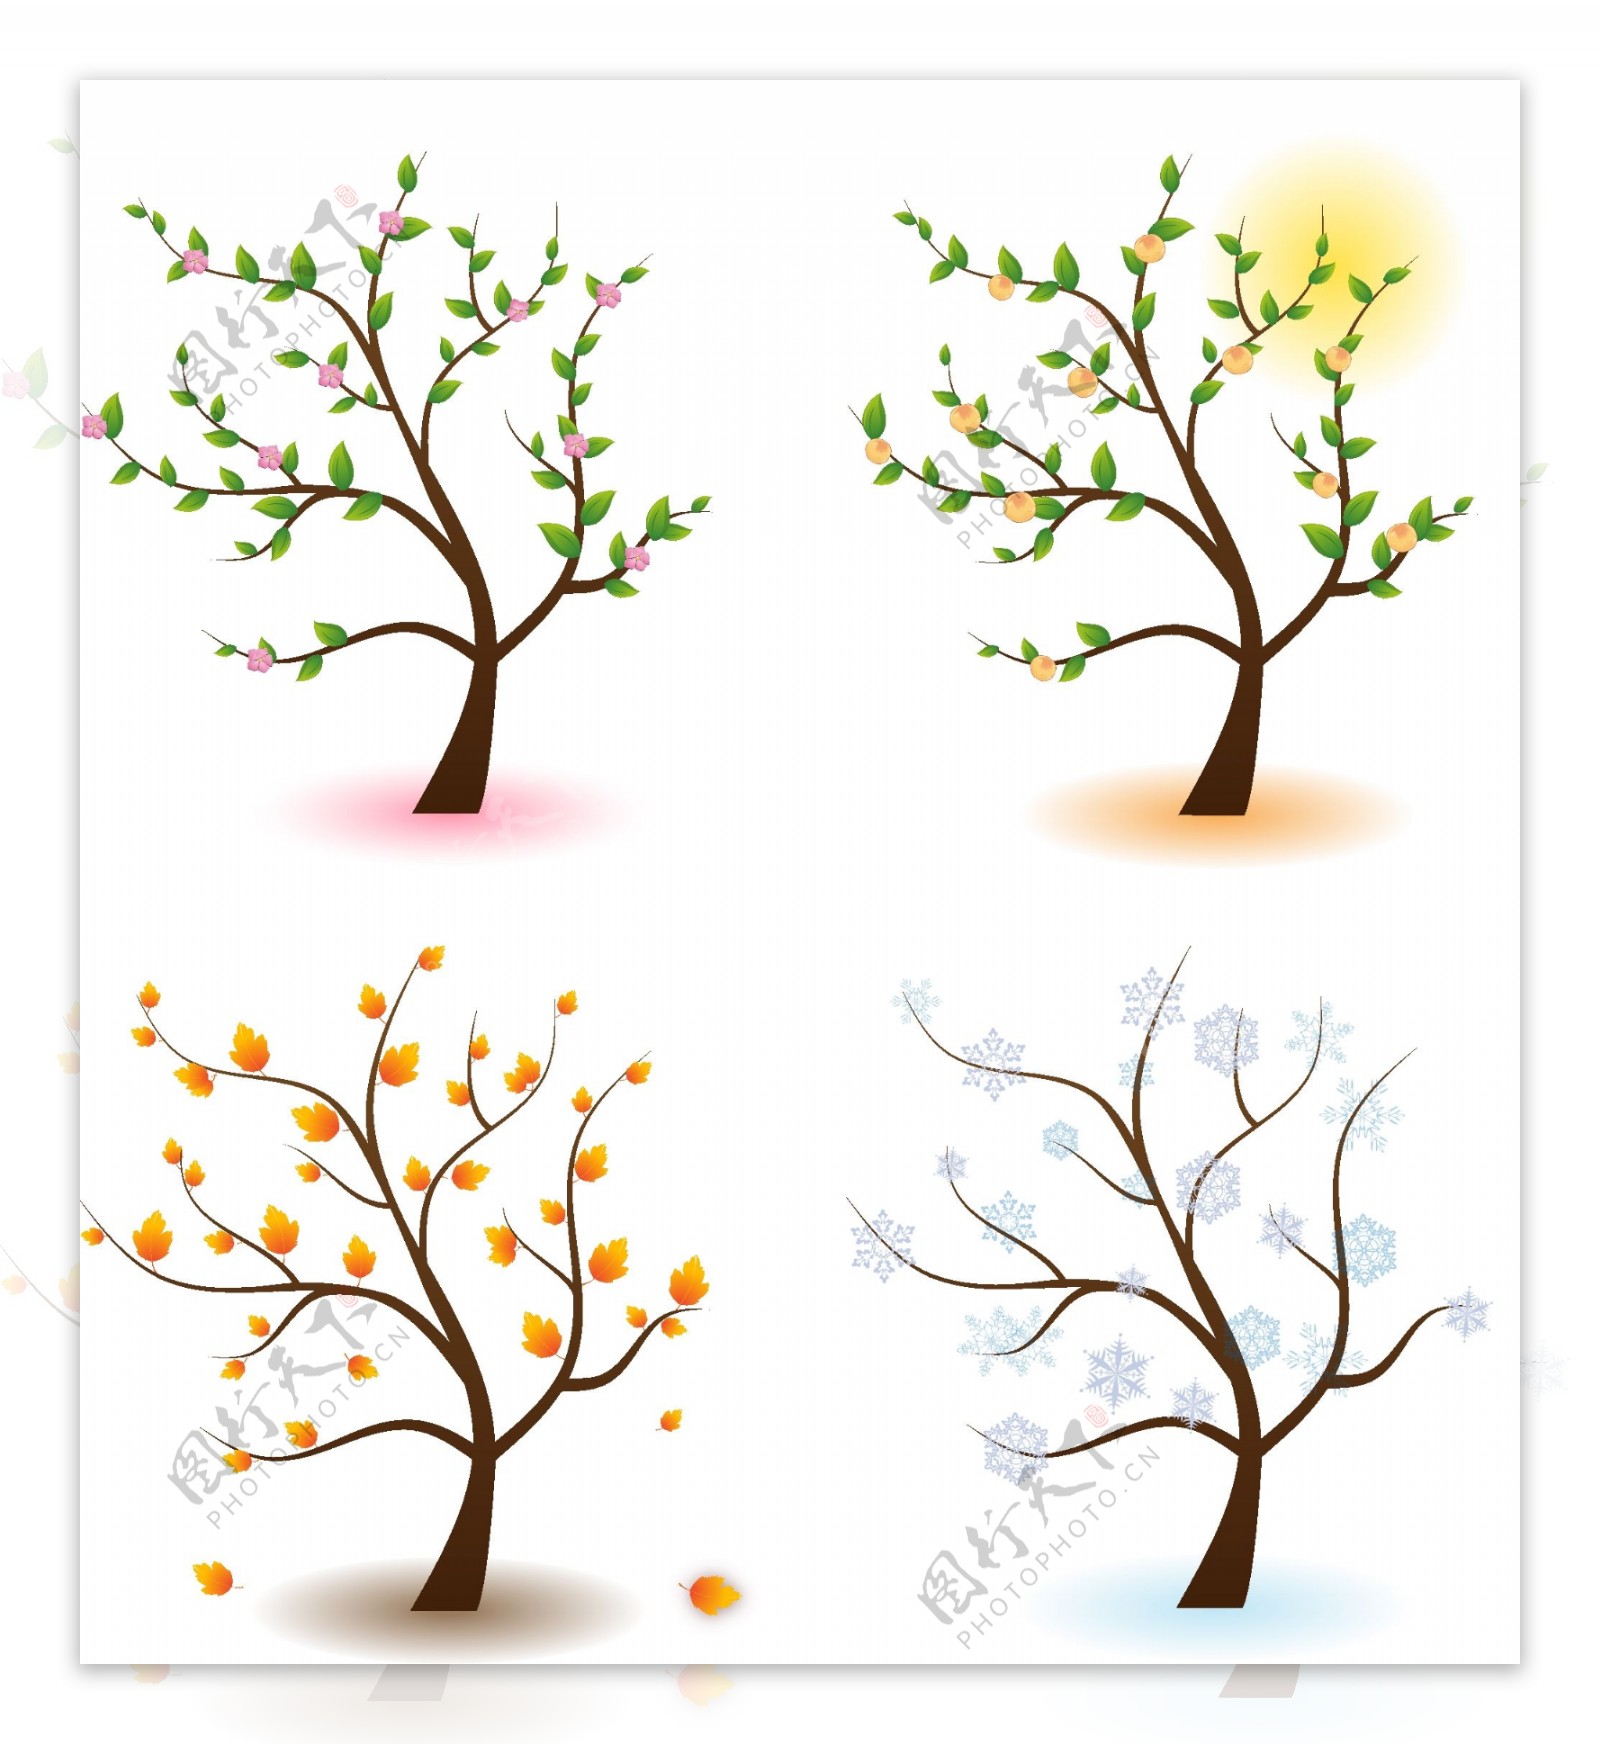 4种季节的树木